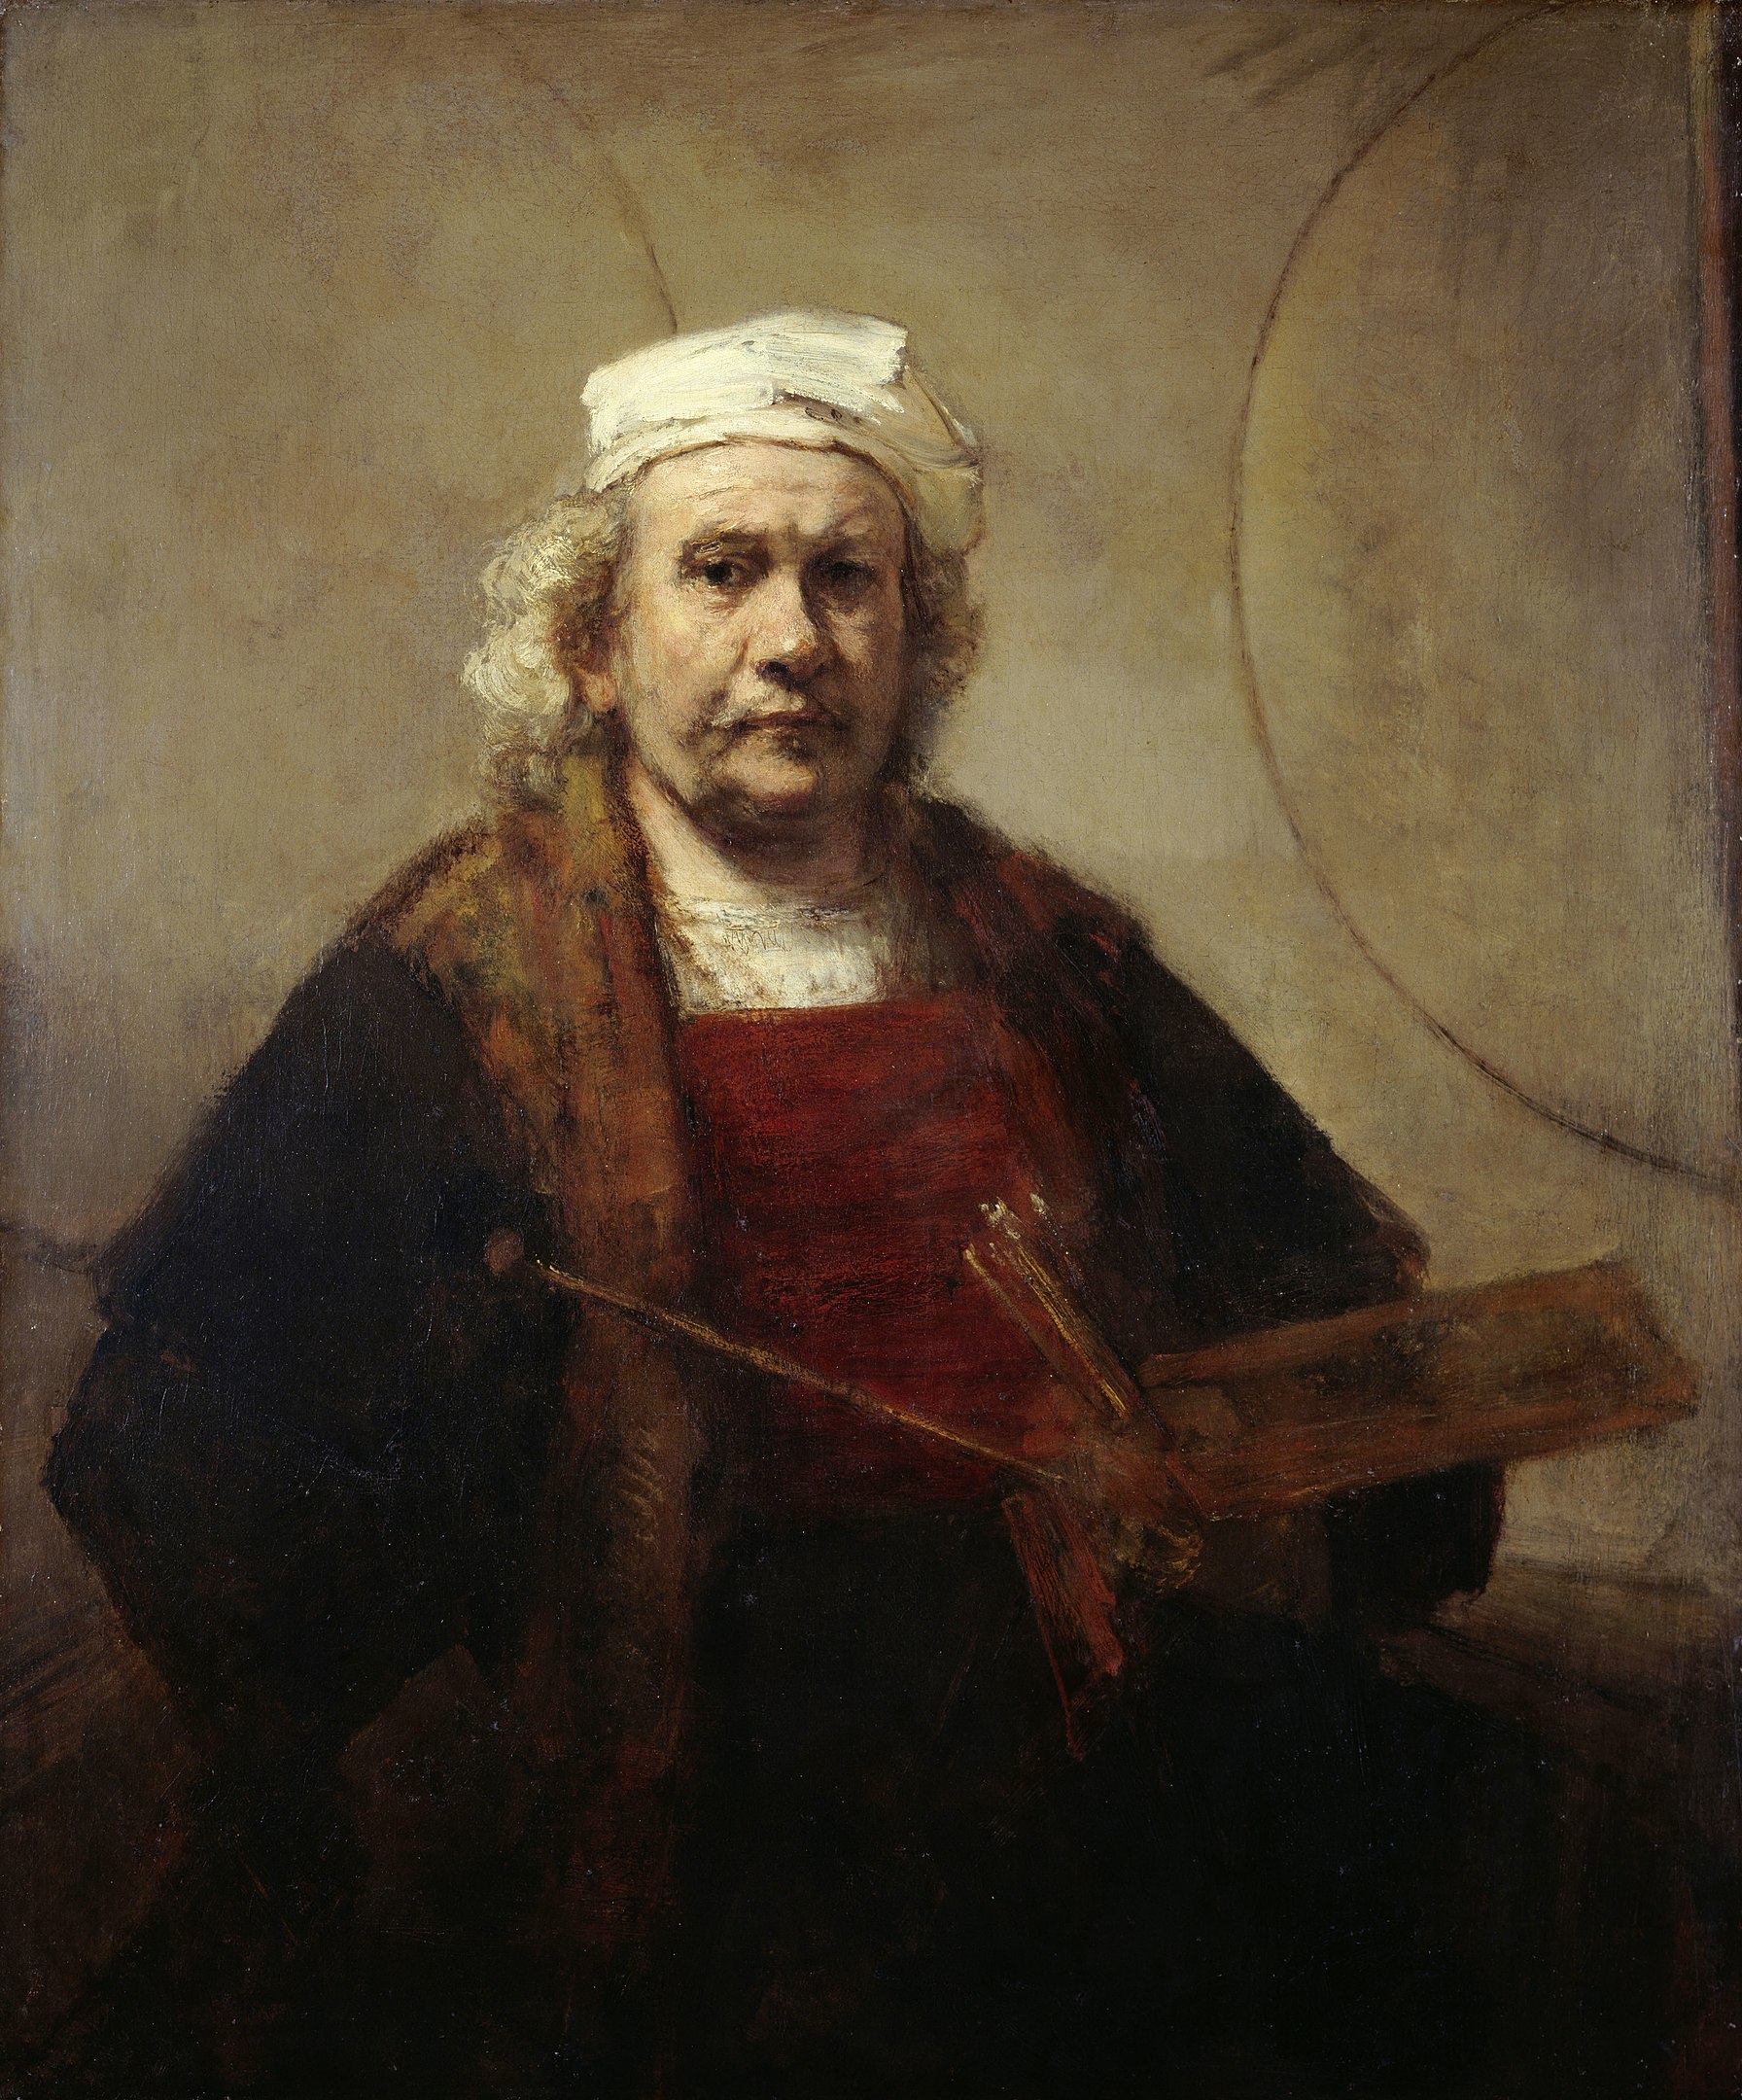 Rembrandt, apodado el maestro de la luz, uno de los más grandes pintores de la historia del arte